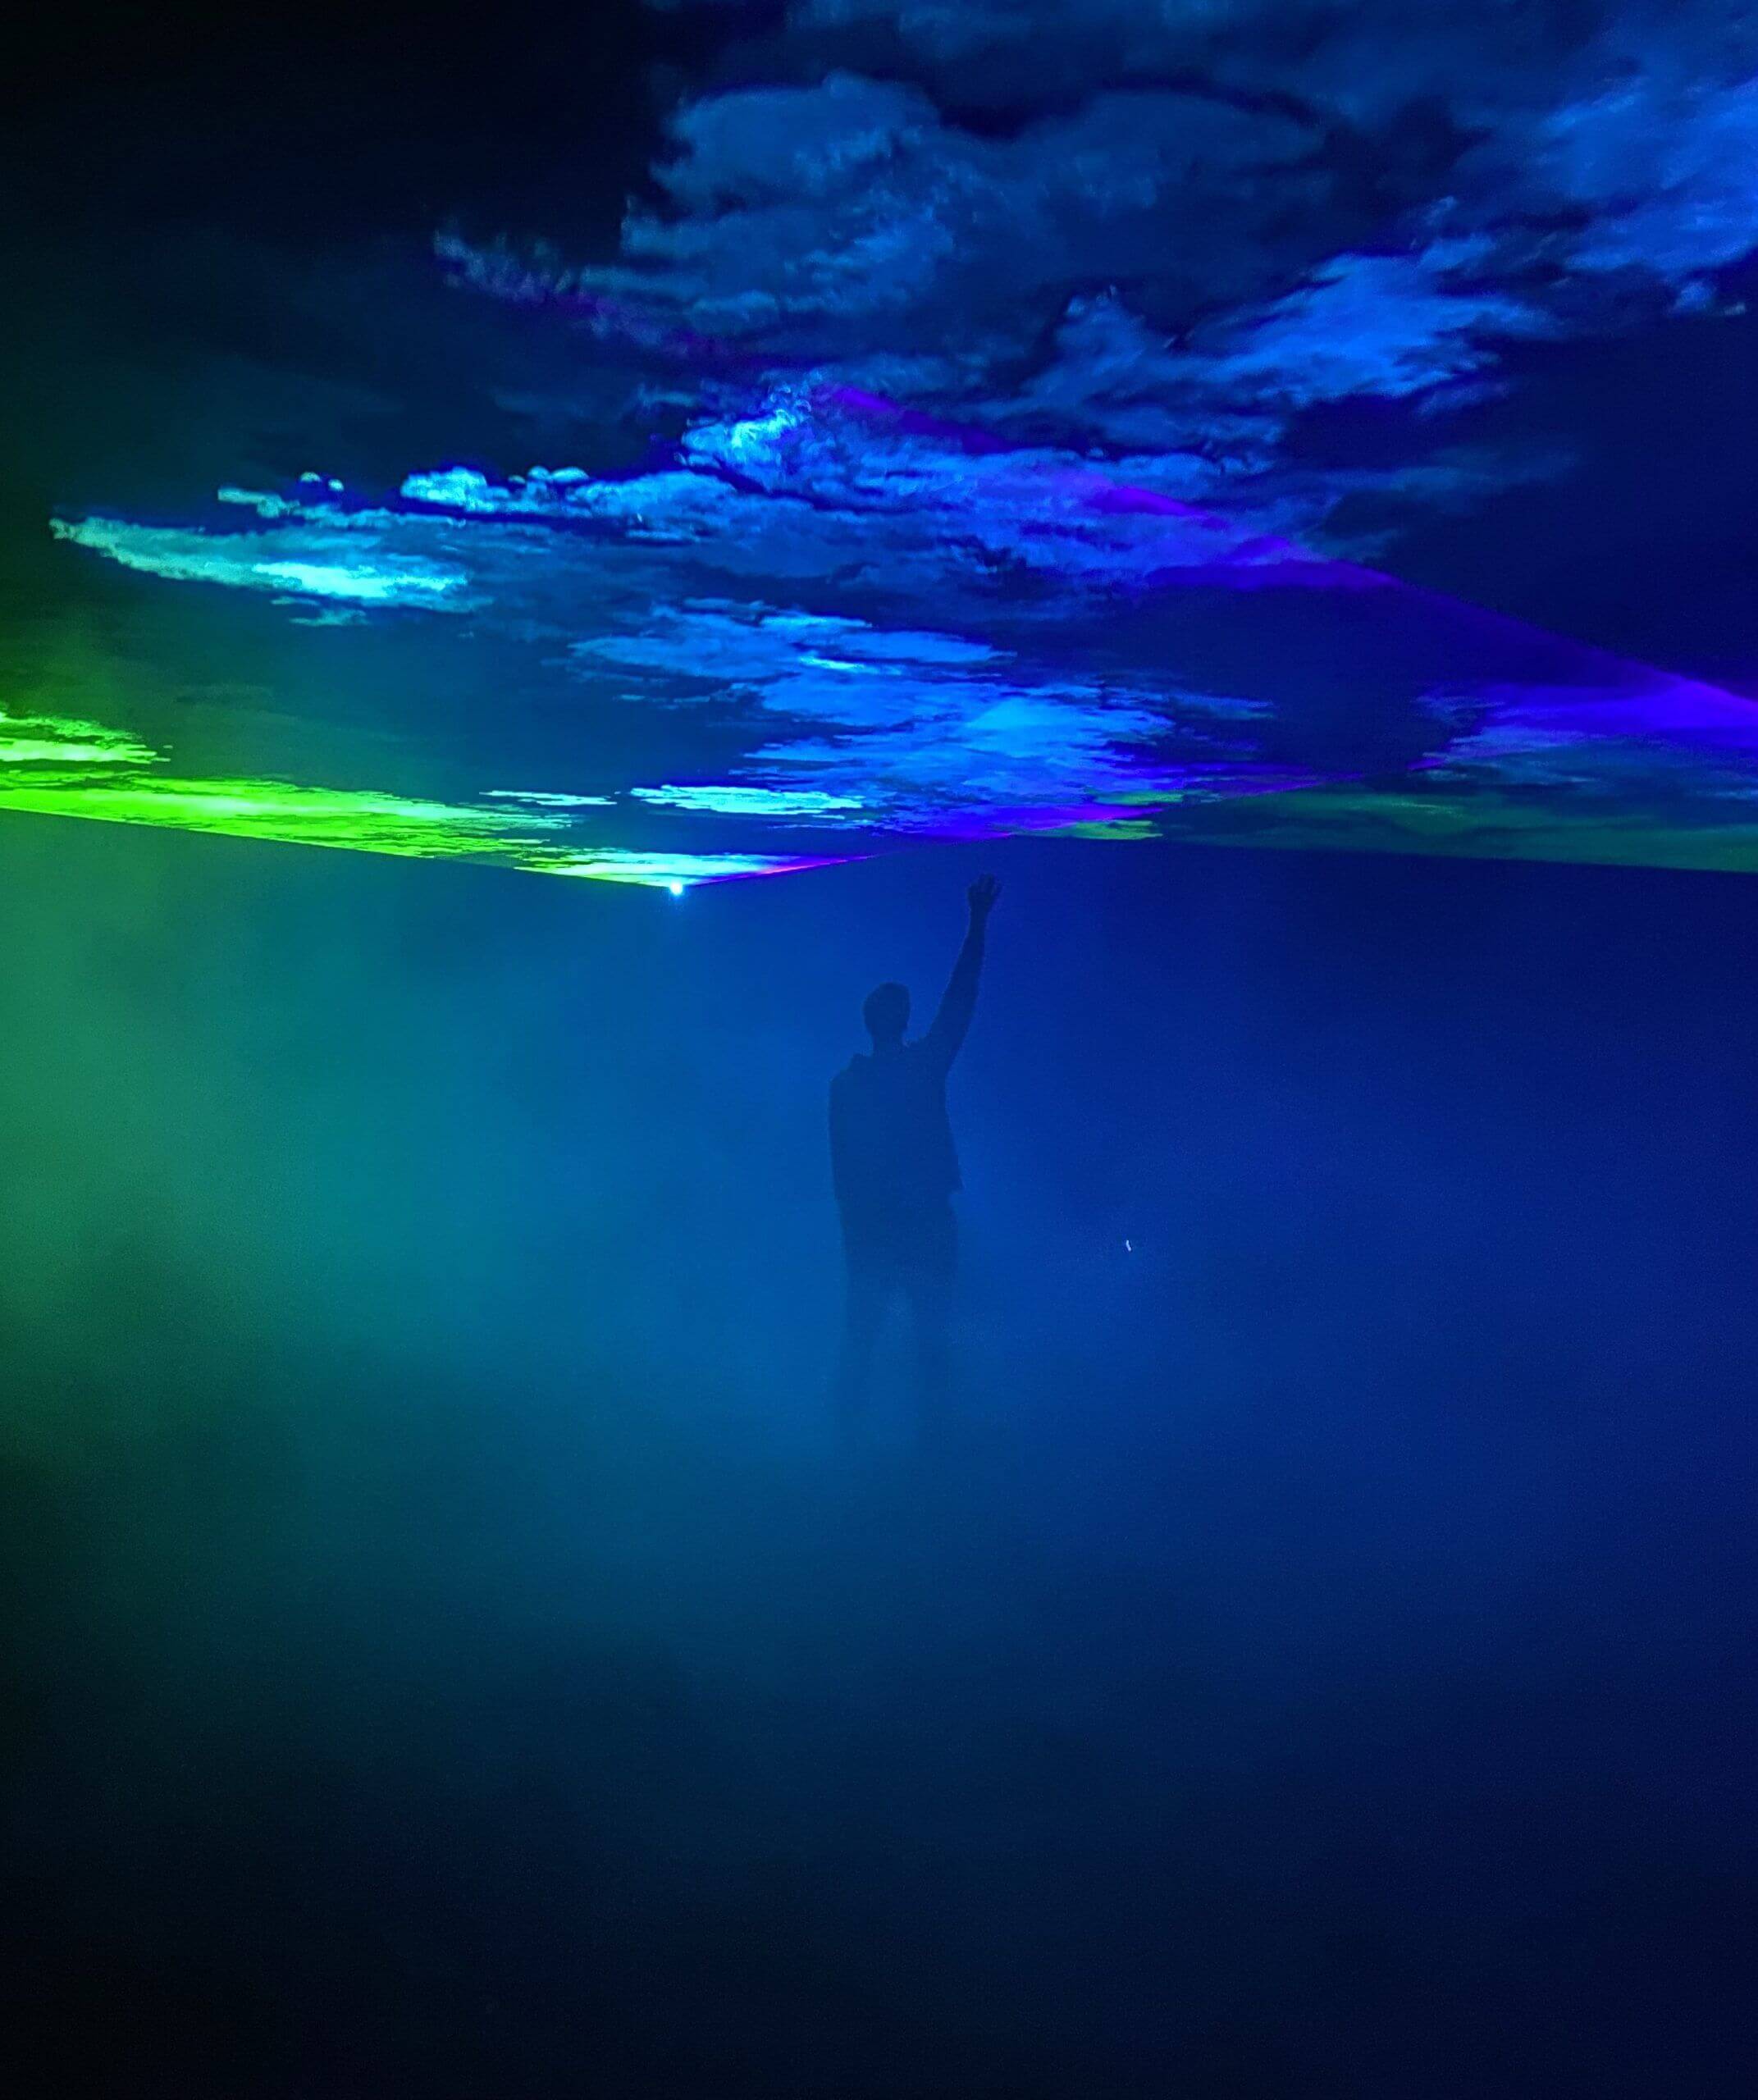 Europe Évènement - Photo d'un homme levant la main pour toucher la projection de fumée bleu et verte lors d'un spectacle laser